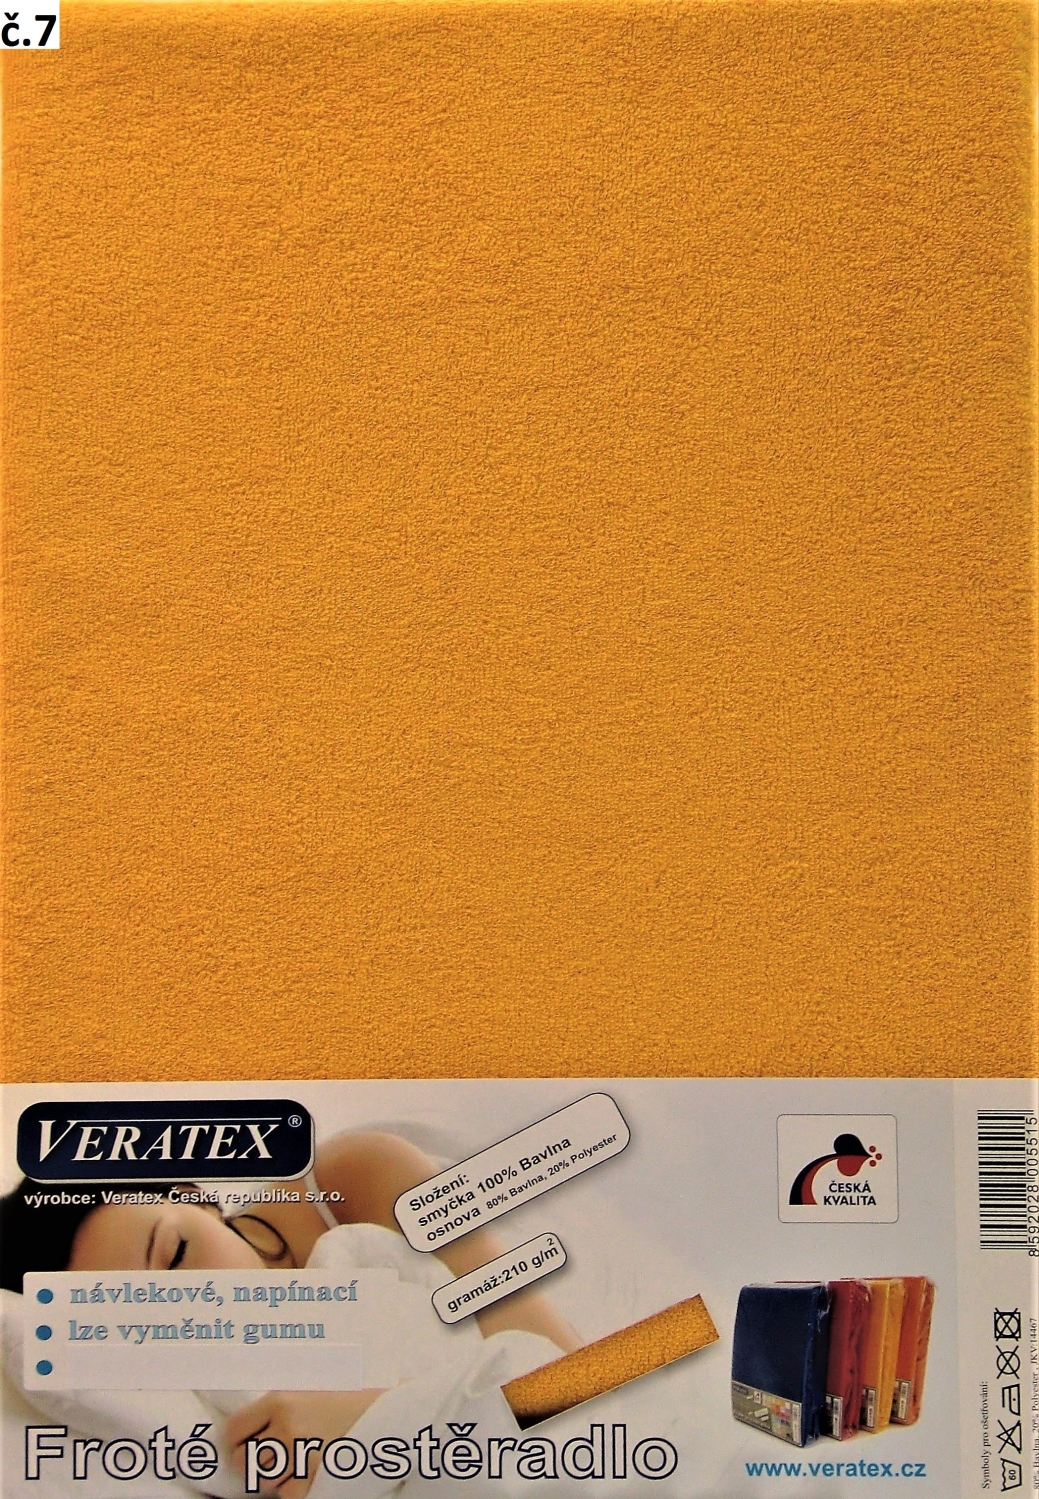 Veratex Froté prostěradlo 120x200/16 cm (č. 7-sytě žlutá)